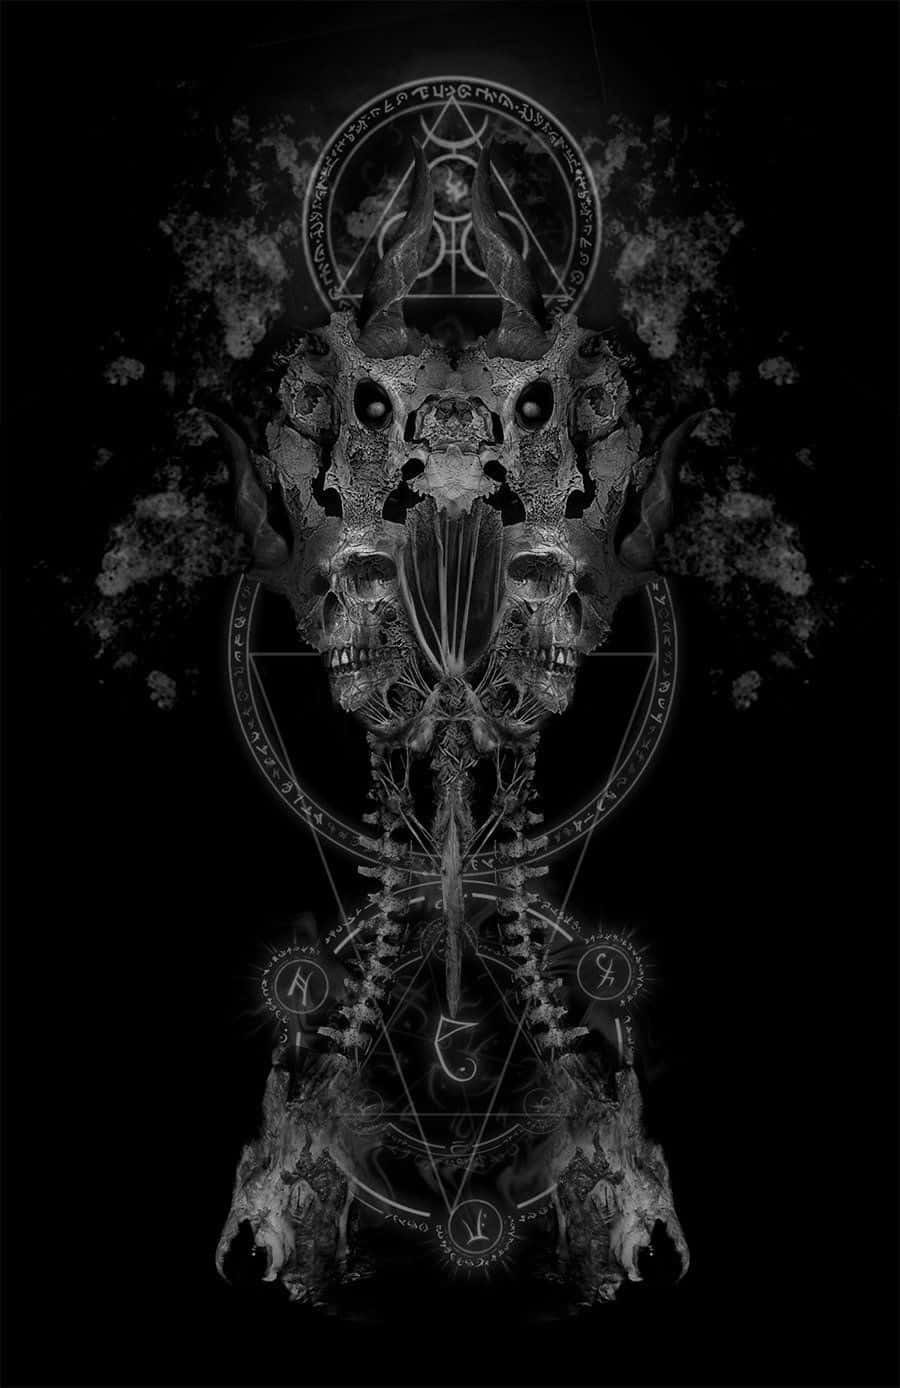 Præsenterer det Gotiske Iphone – en uundværlig accessoire til at udtrykke dit inderste mørke. Wallpaper